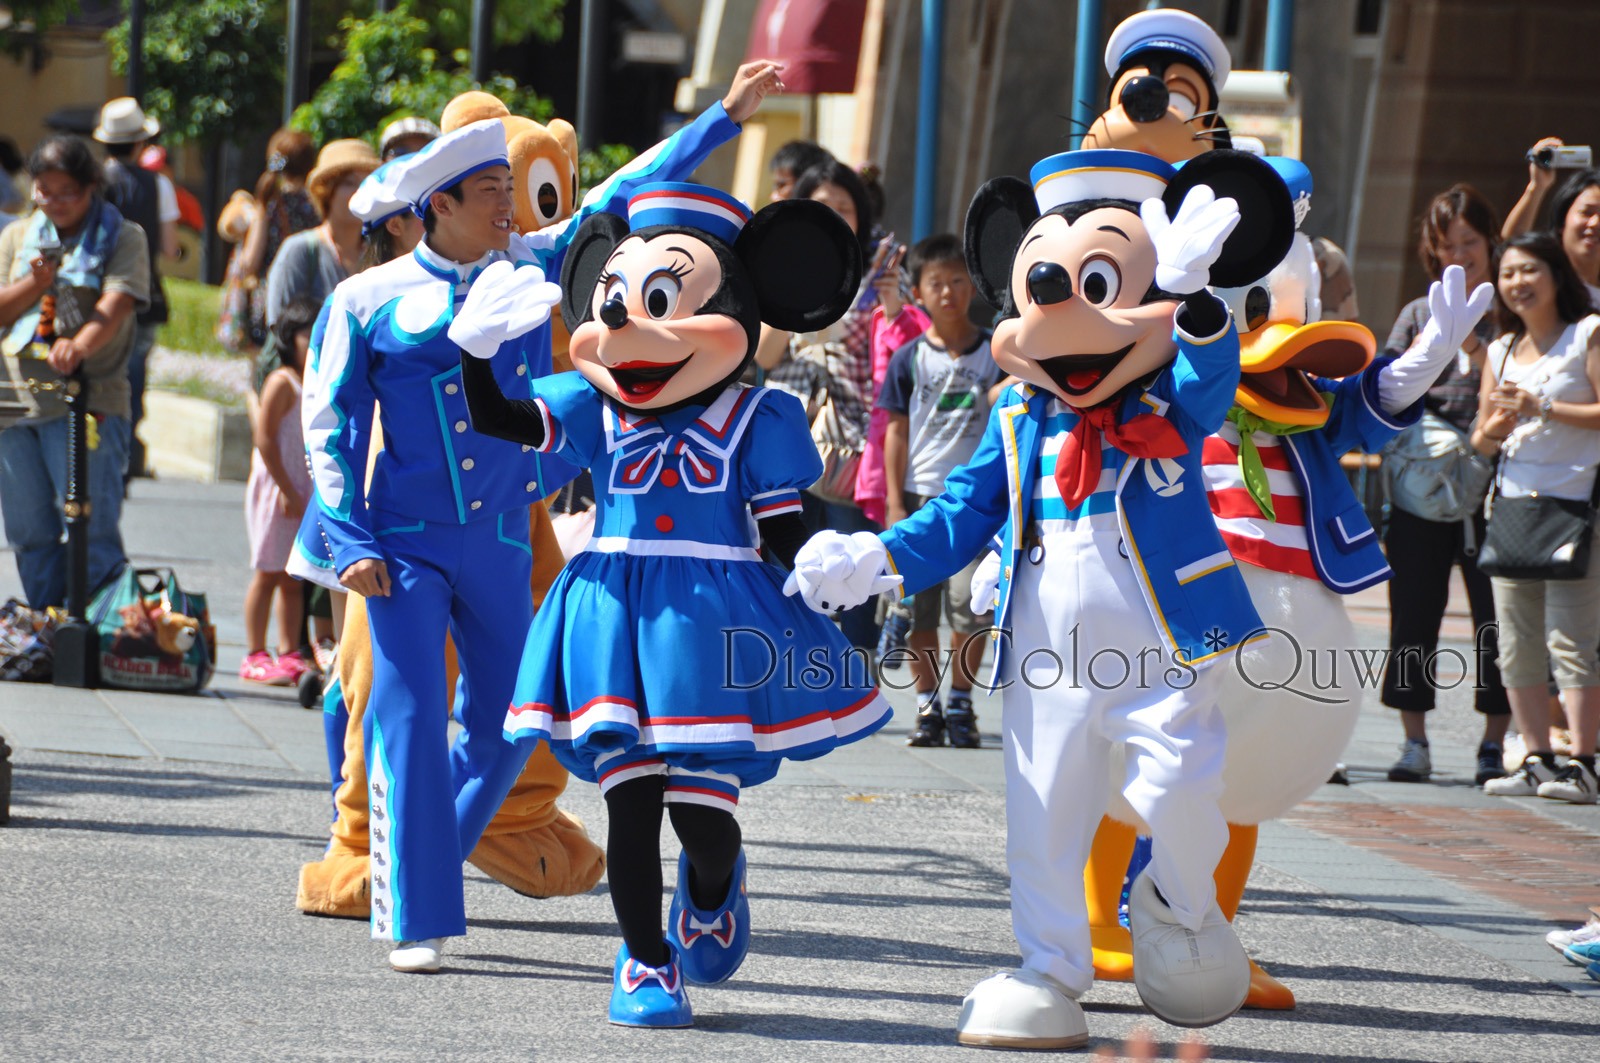 15周年のテーマは Wish クリスタルがきらめく海へ 東京ディズニーシー15周年 ザ イヤー オブ ウィッシュ 開催 Disney Colors Blog